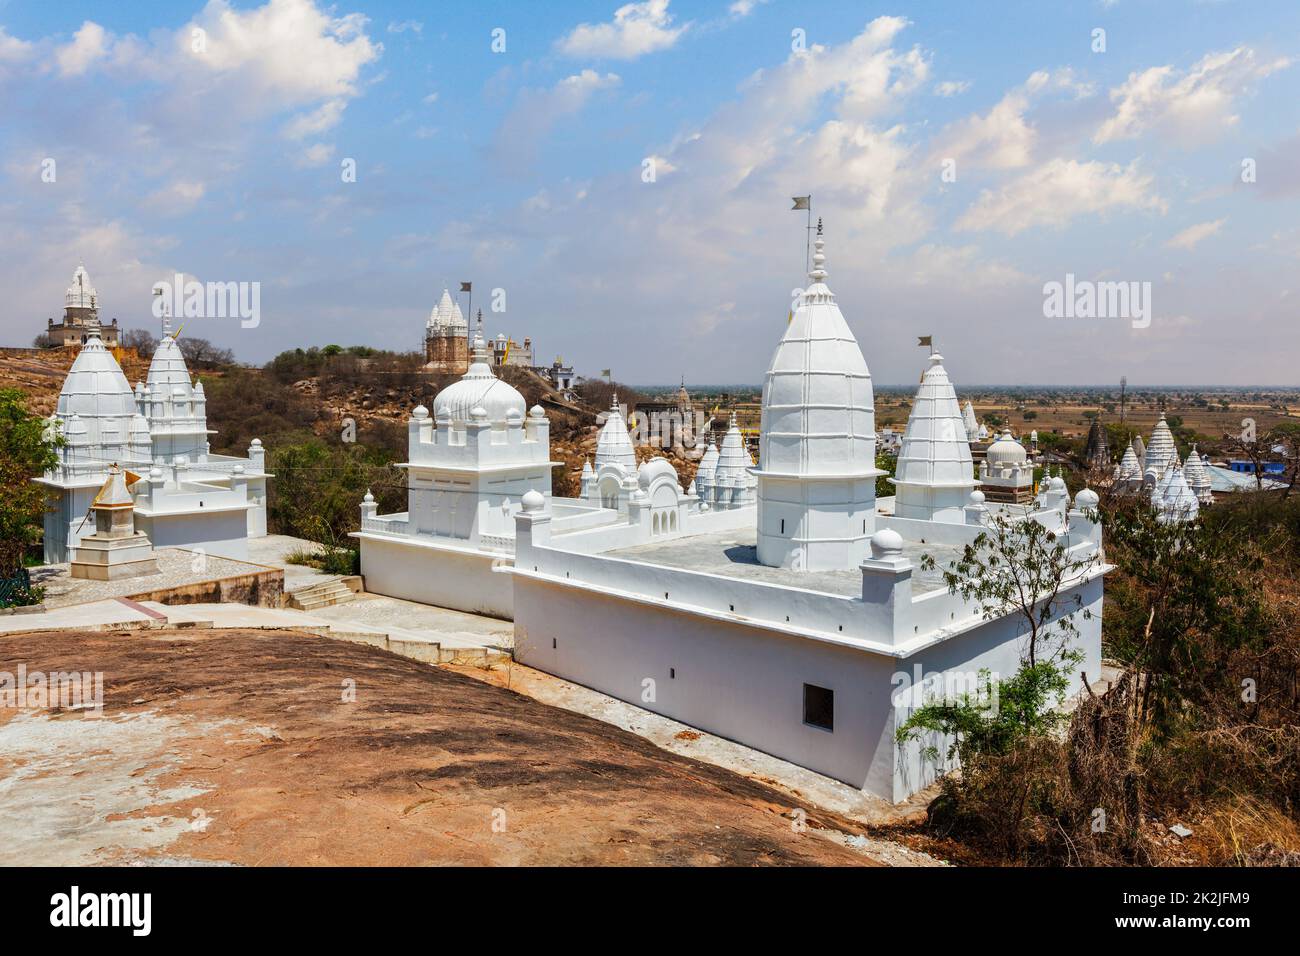 Sonagiri Jain Temples, Madhya Pradesh state, India Stock Photo